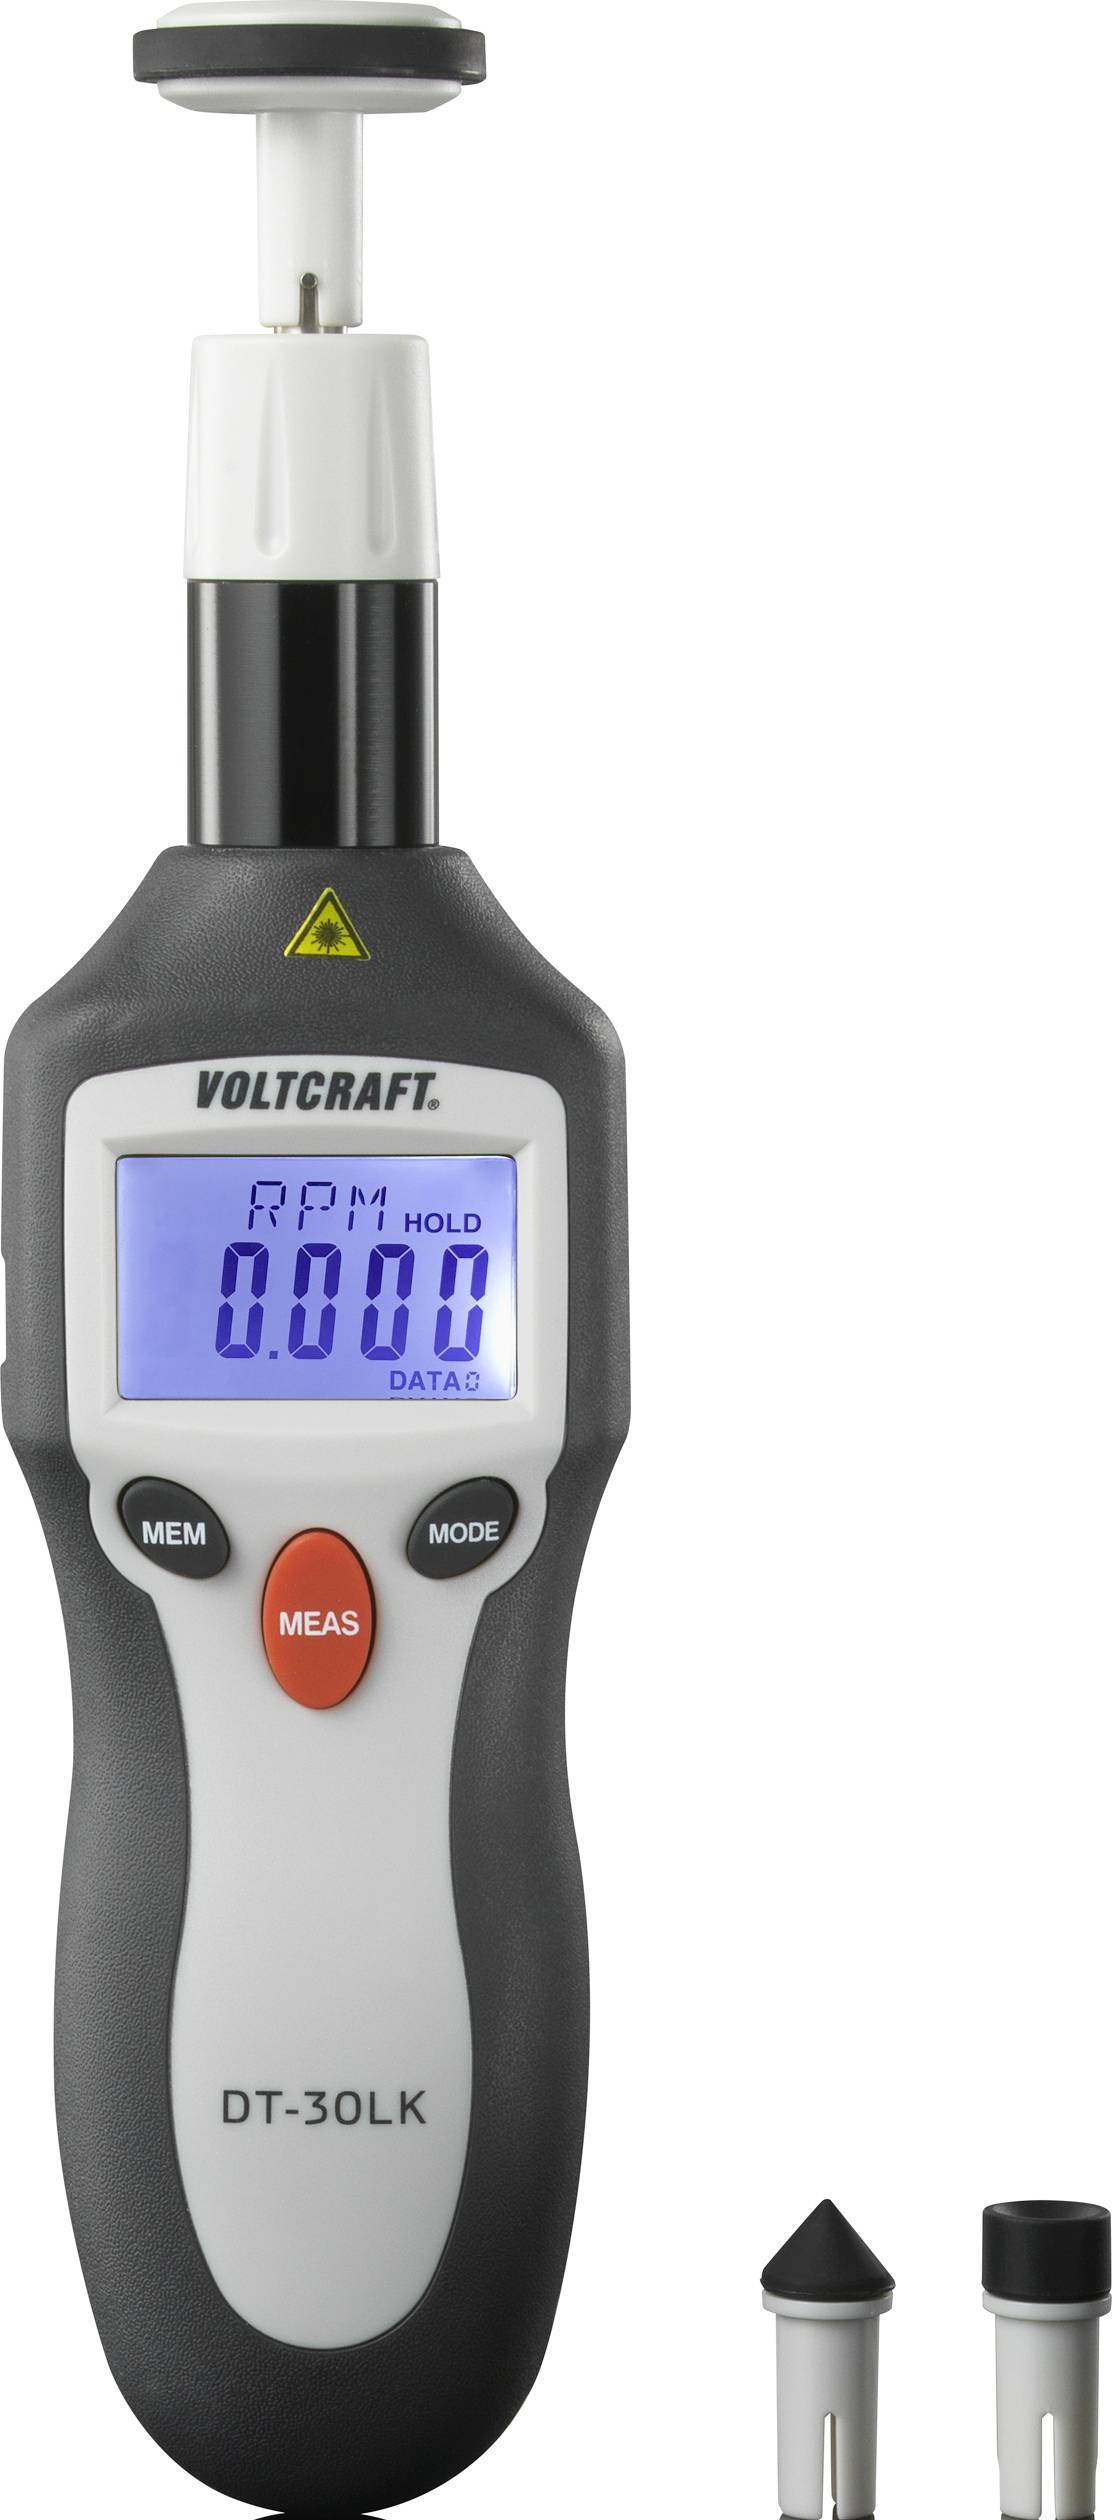 VOLTCRAFT ® DT-30LK Digitaler Hand-Drehzahlmesser 2 - 200000 U/min, Laser-Drehzahlmesser, Wegstreck